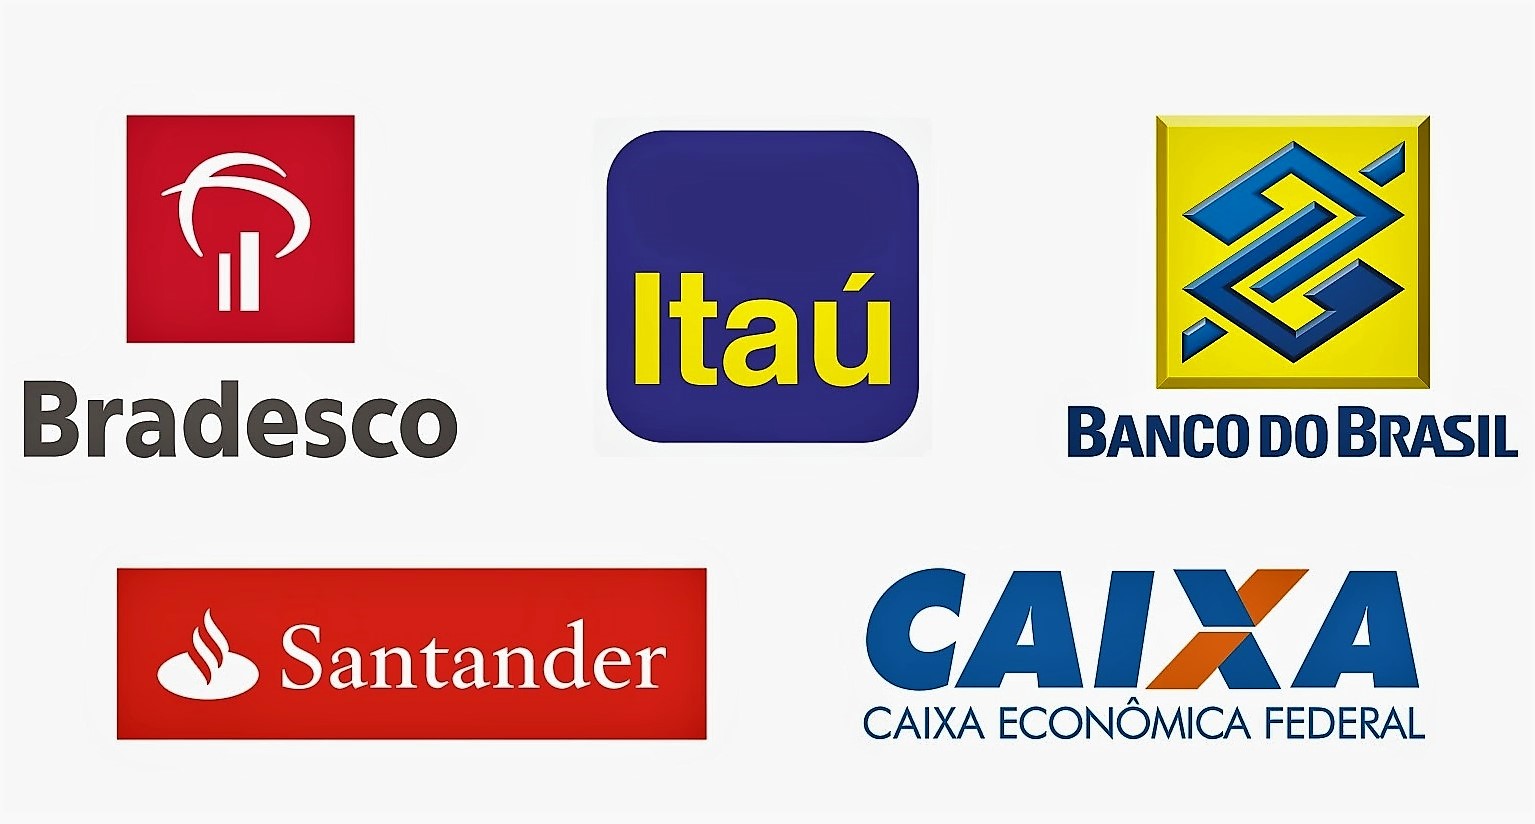 "Vivre au Brésil" - En matière d'actif, de bénéfice ou de nombre de clients, 5 banques se partagent 80% du marché bancaire brésilien